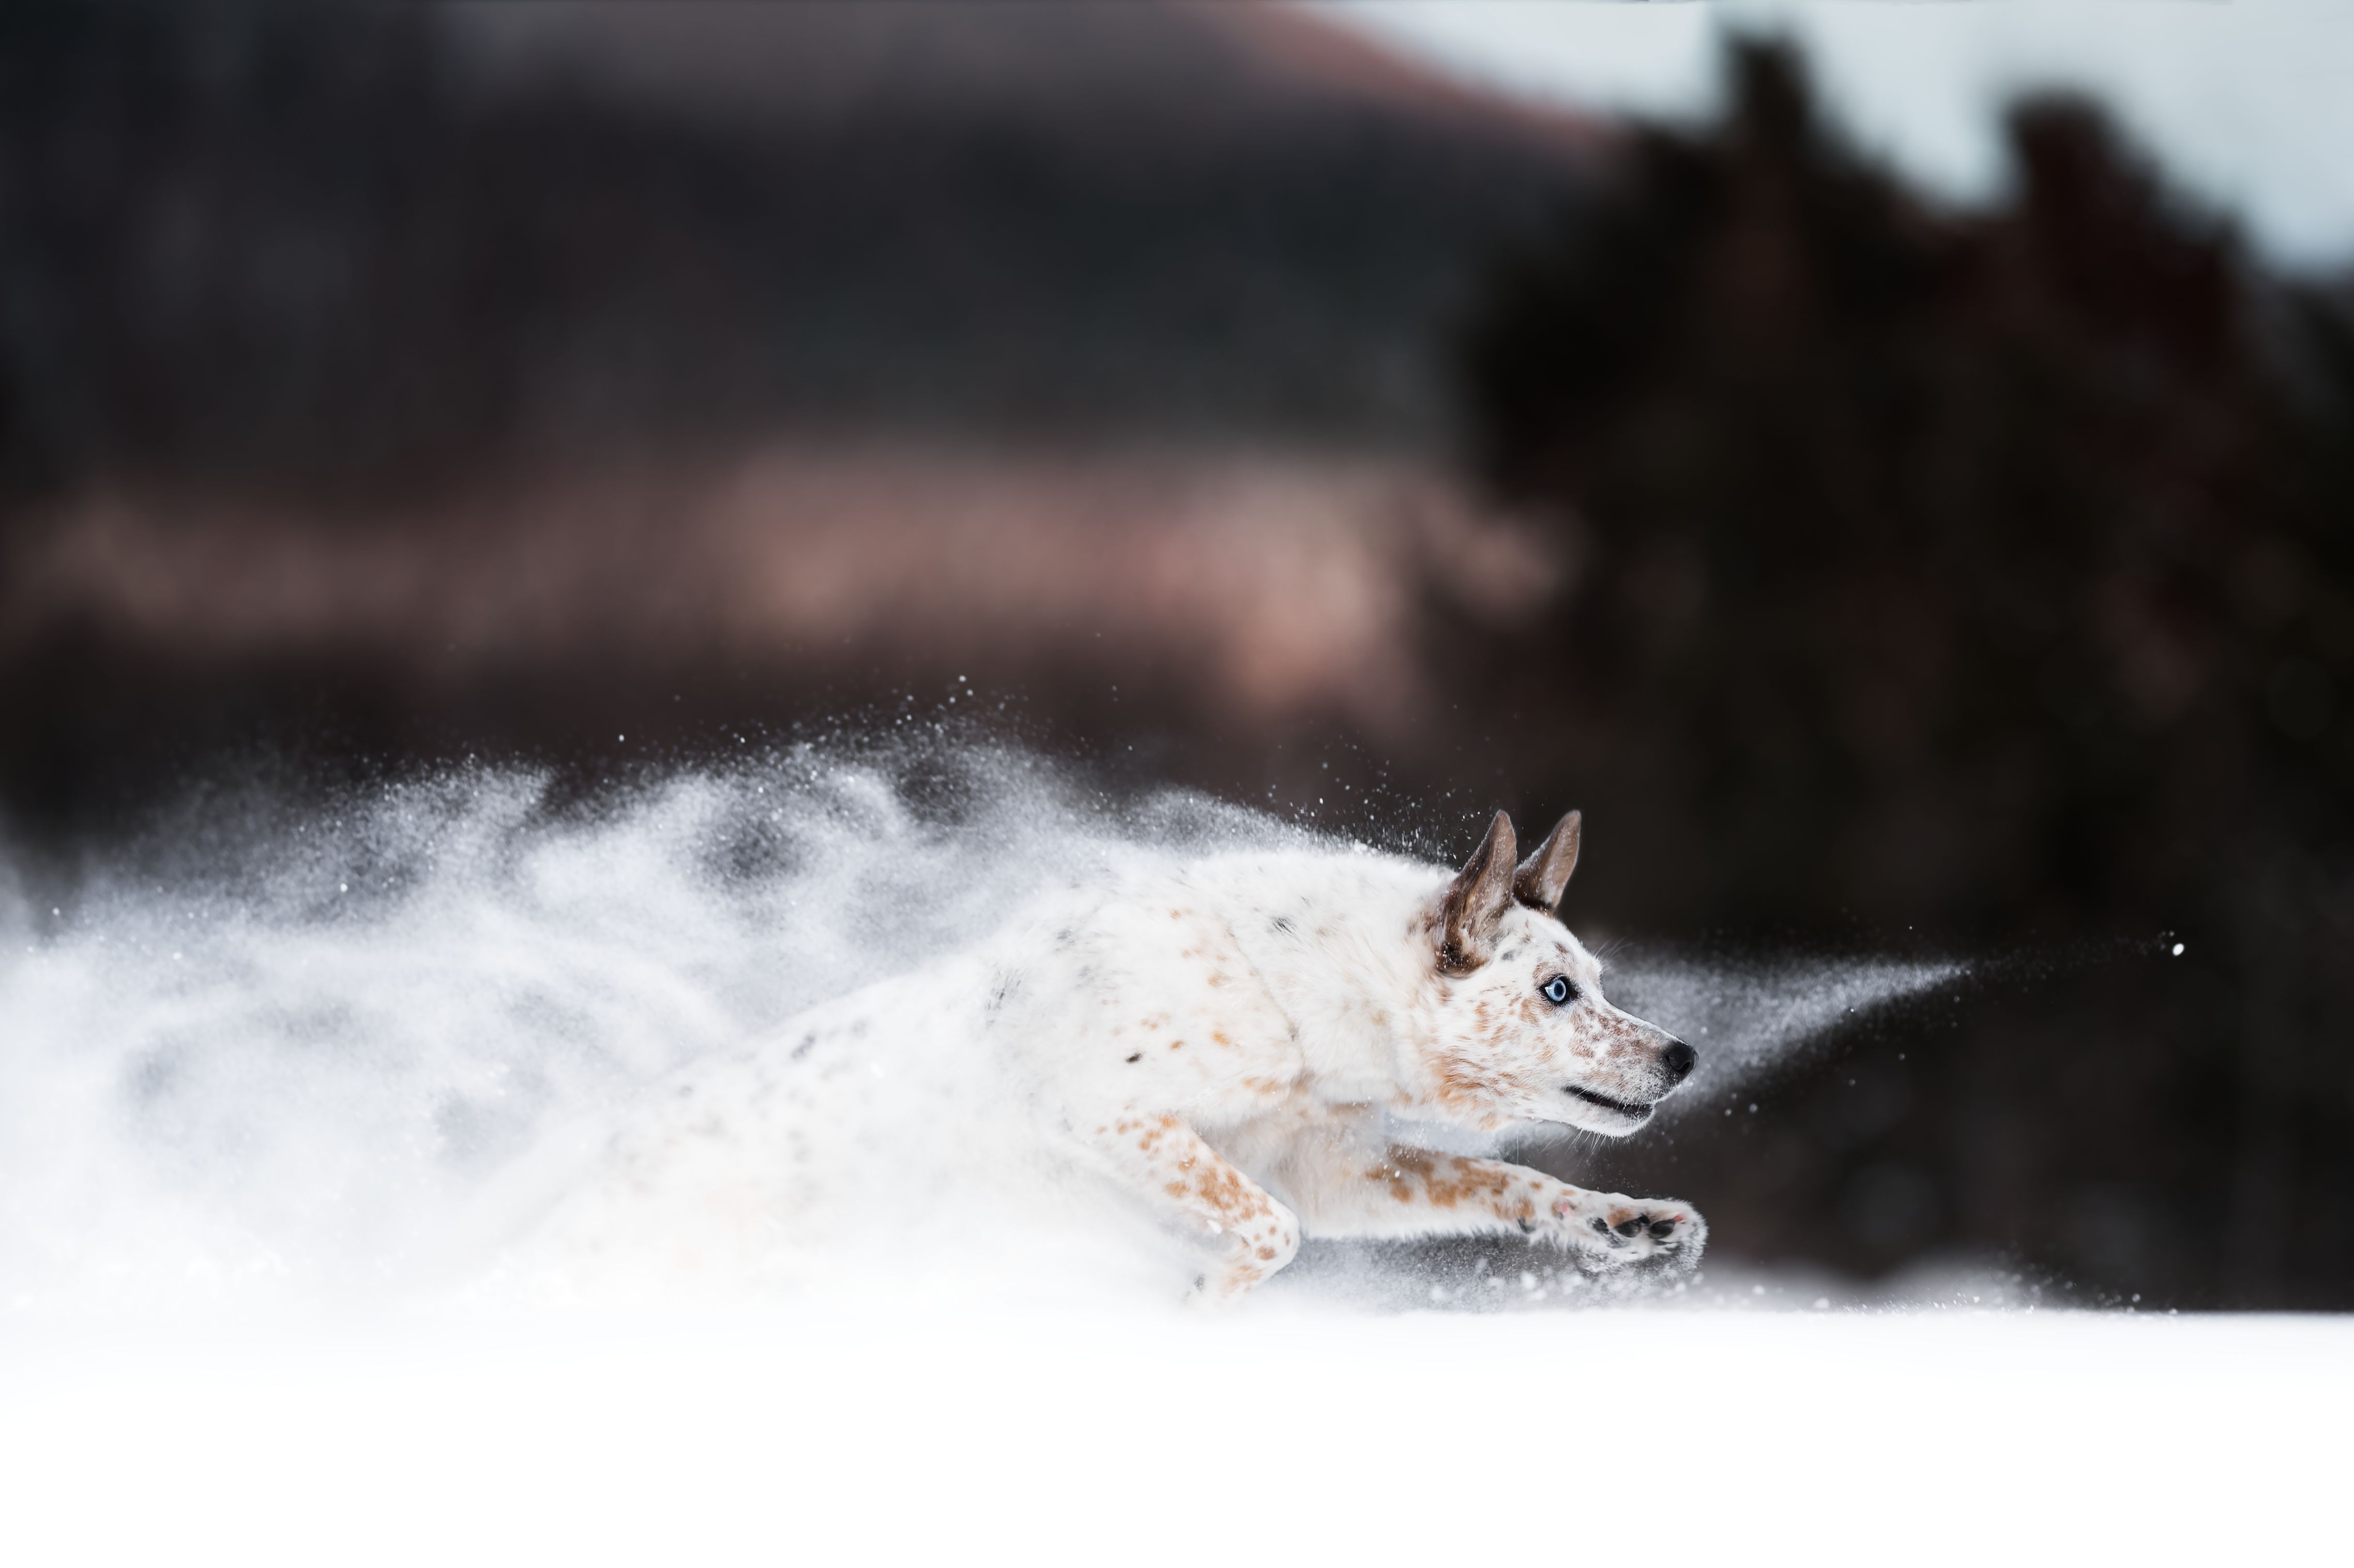 Скачать обои бесплатно Животные, Собаки, Снег, Бег, Австралийская Пастушья Собака картинка на рабочий стол ПК